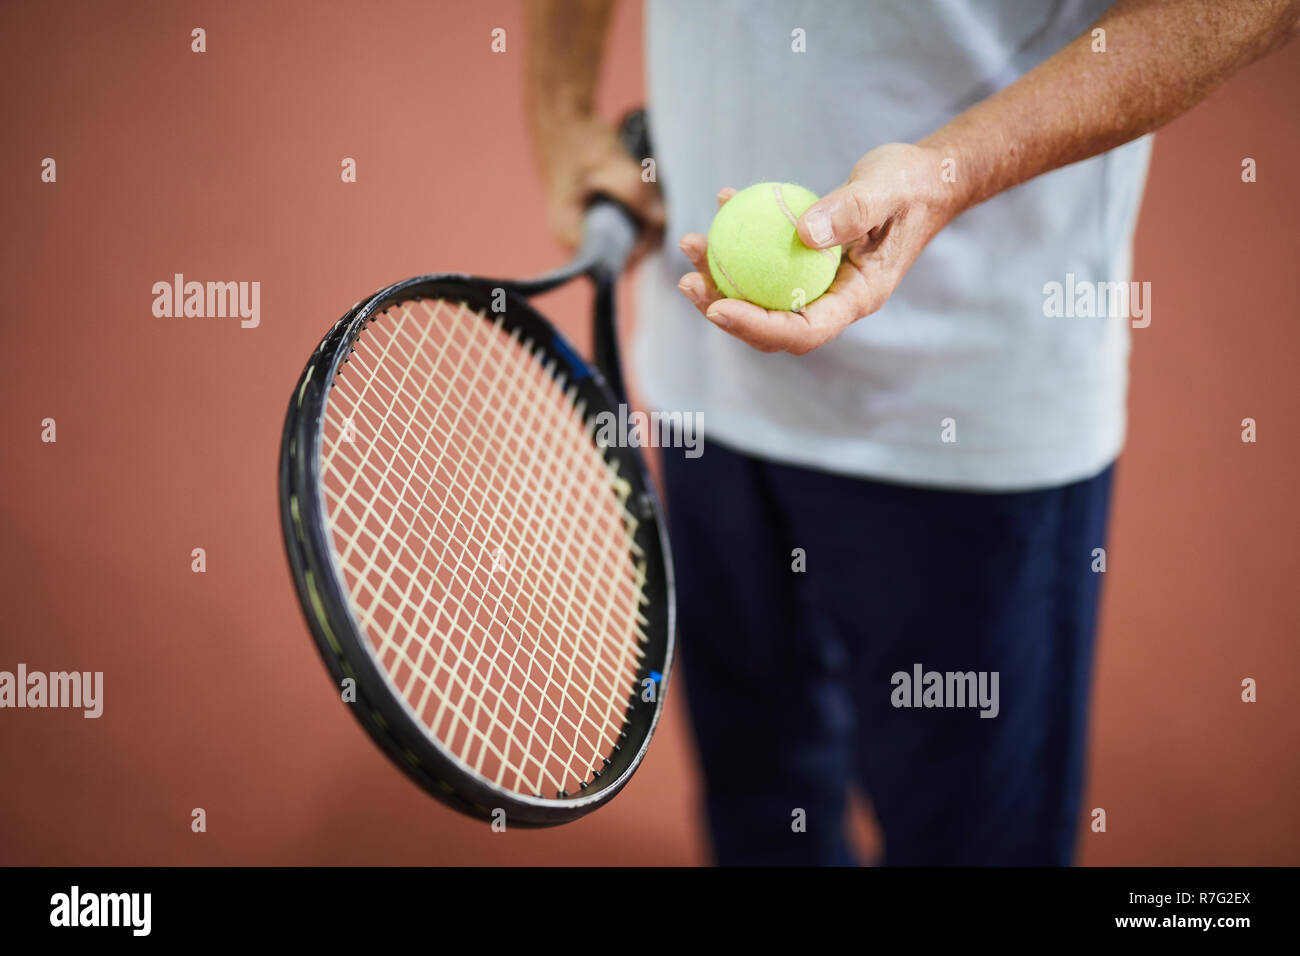 Matériel pour le jeu de tennis Banque D'Images